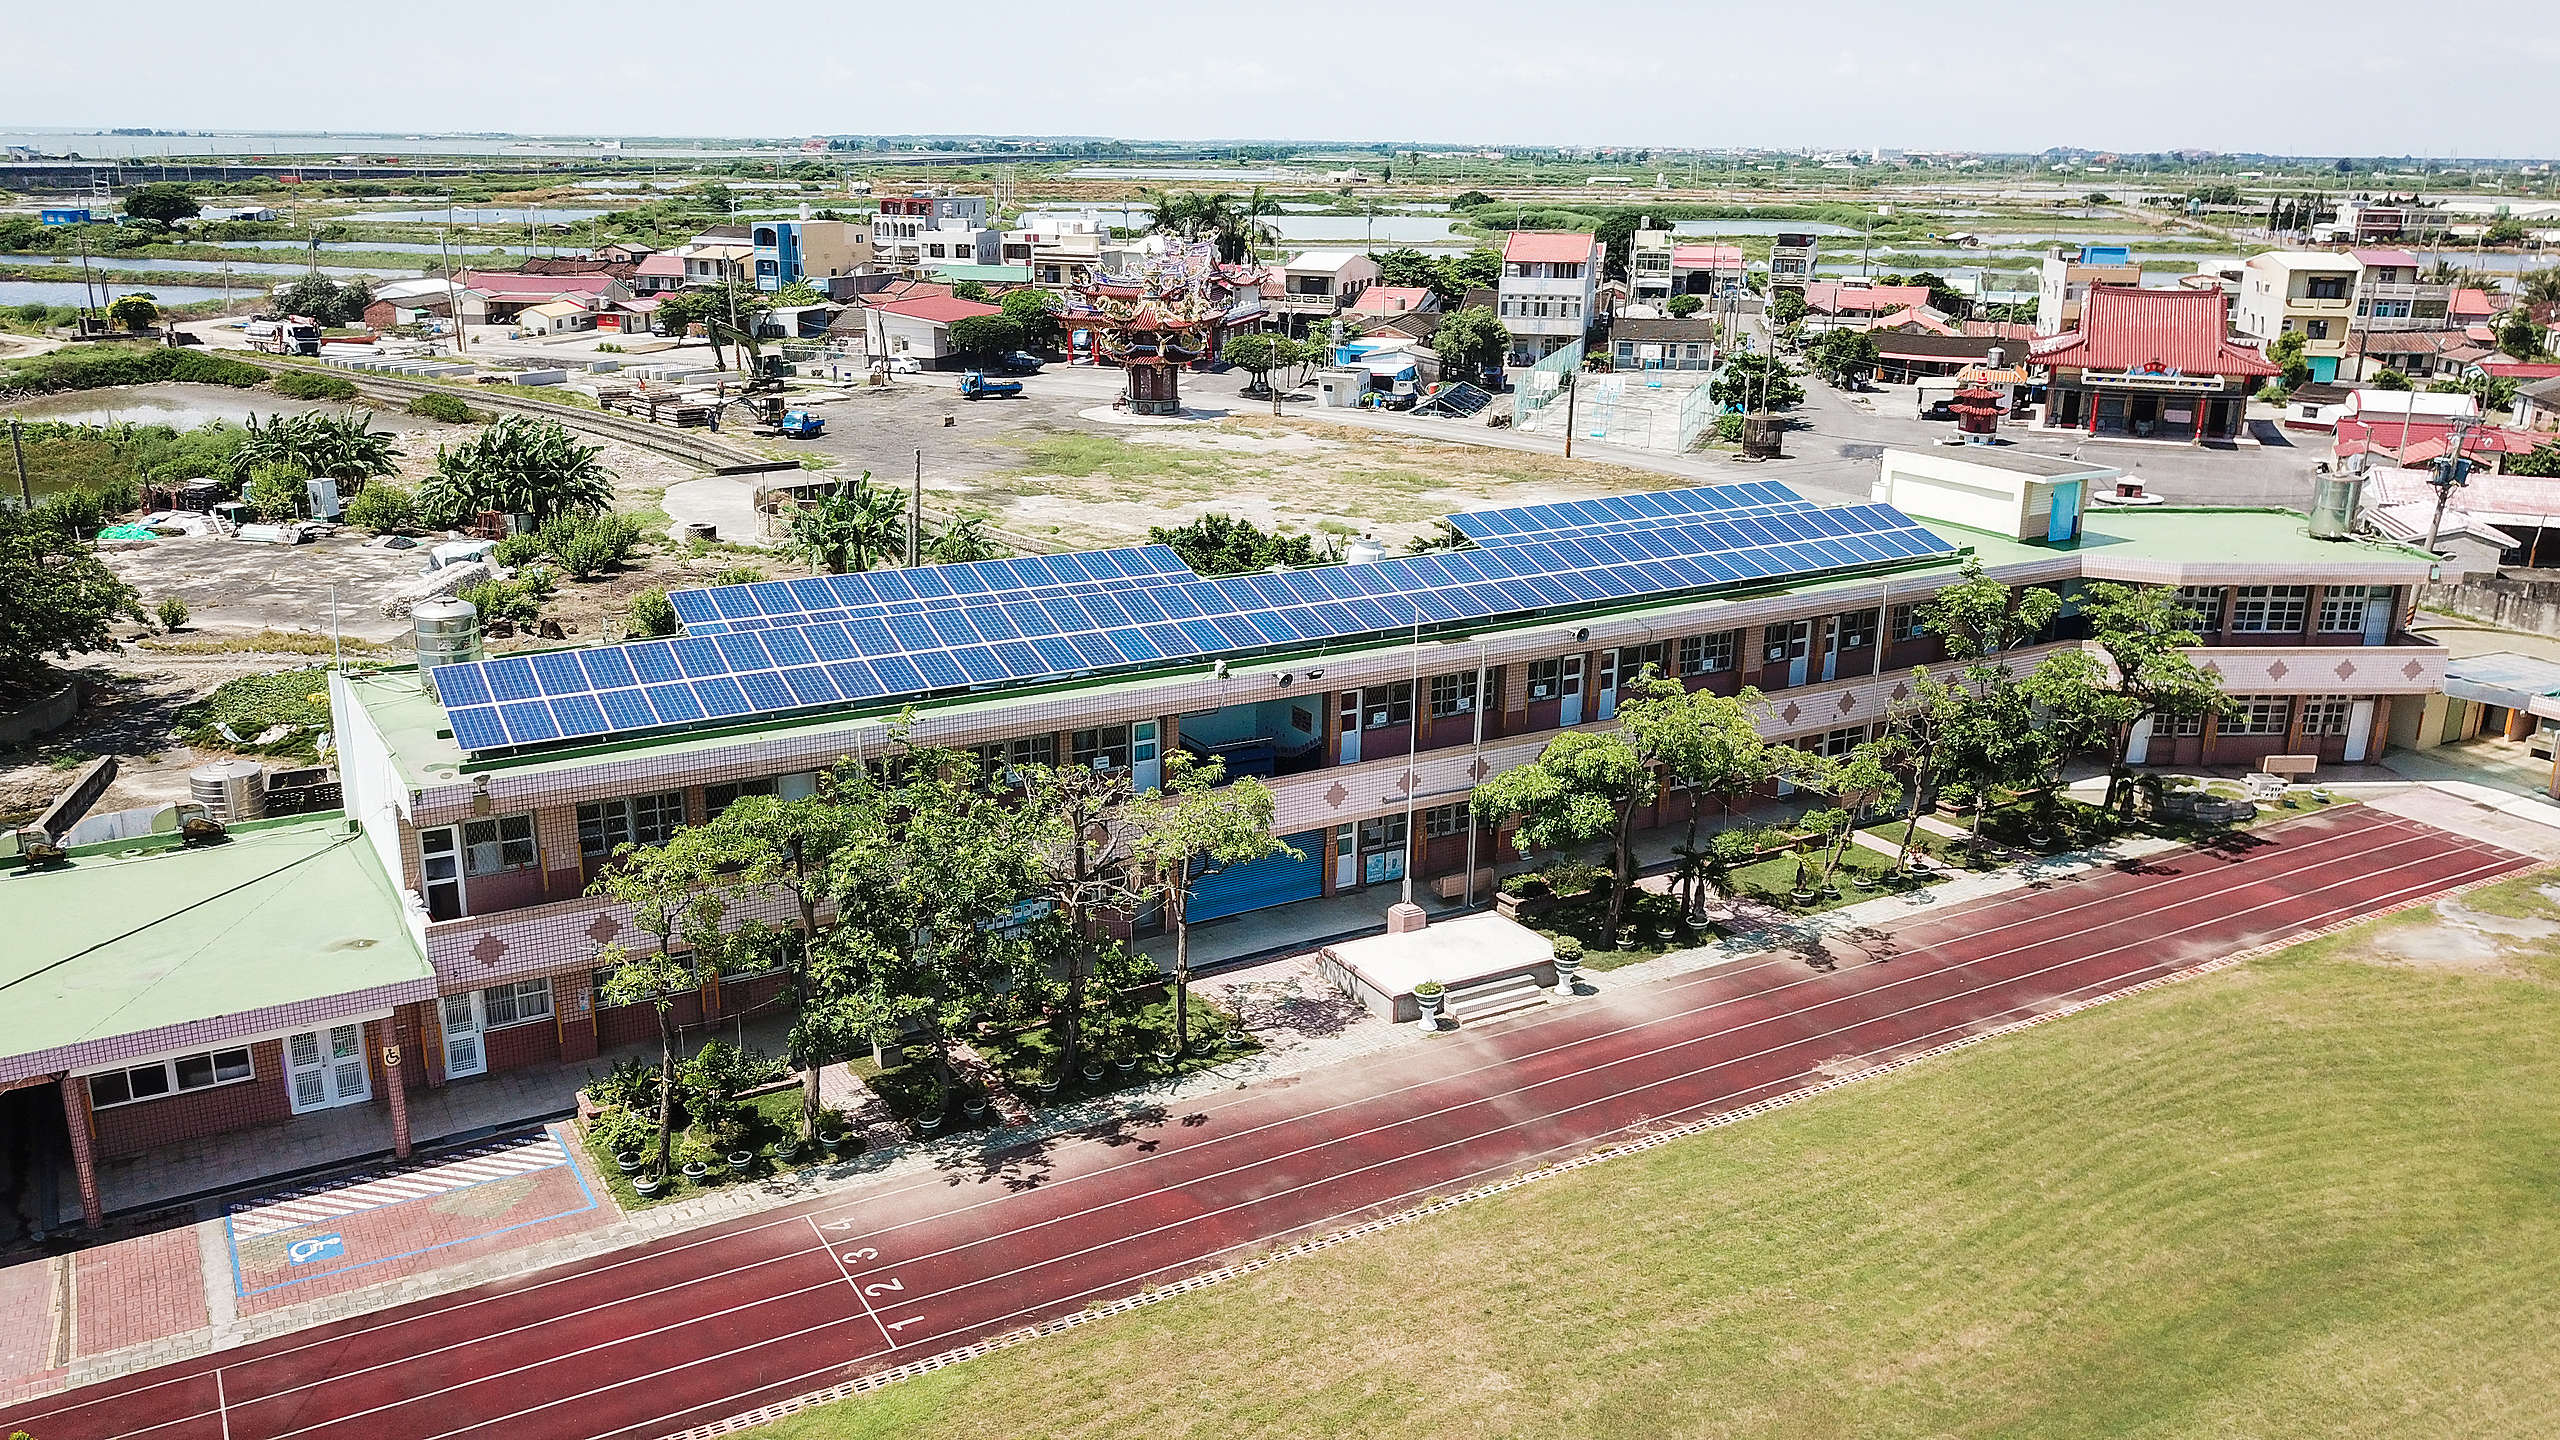 屋頂型太陽光電在建築屋頂就能發電，可取得電力並減少生態破壞。